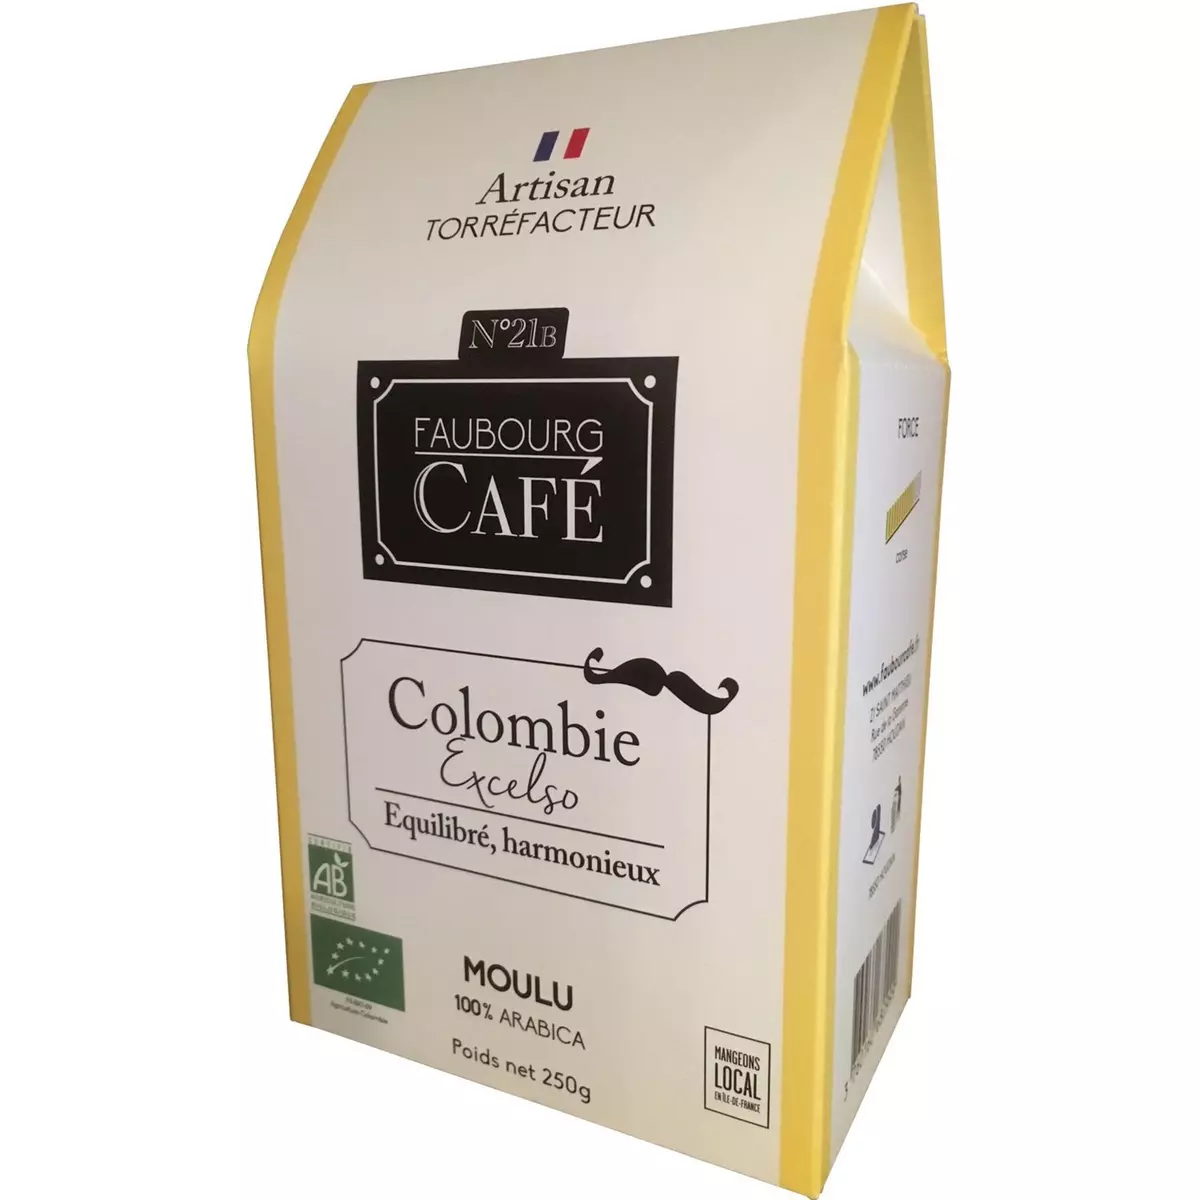 FAUBOURG CAFE Café moulu bio de Colombie excelso 100% arabica 250g